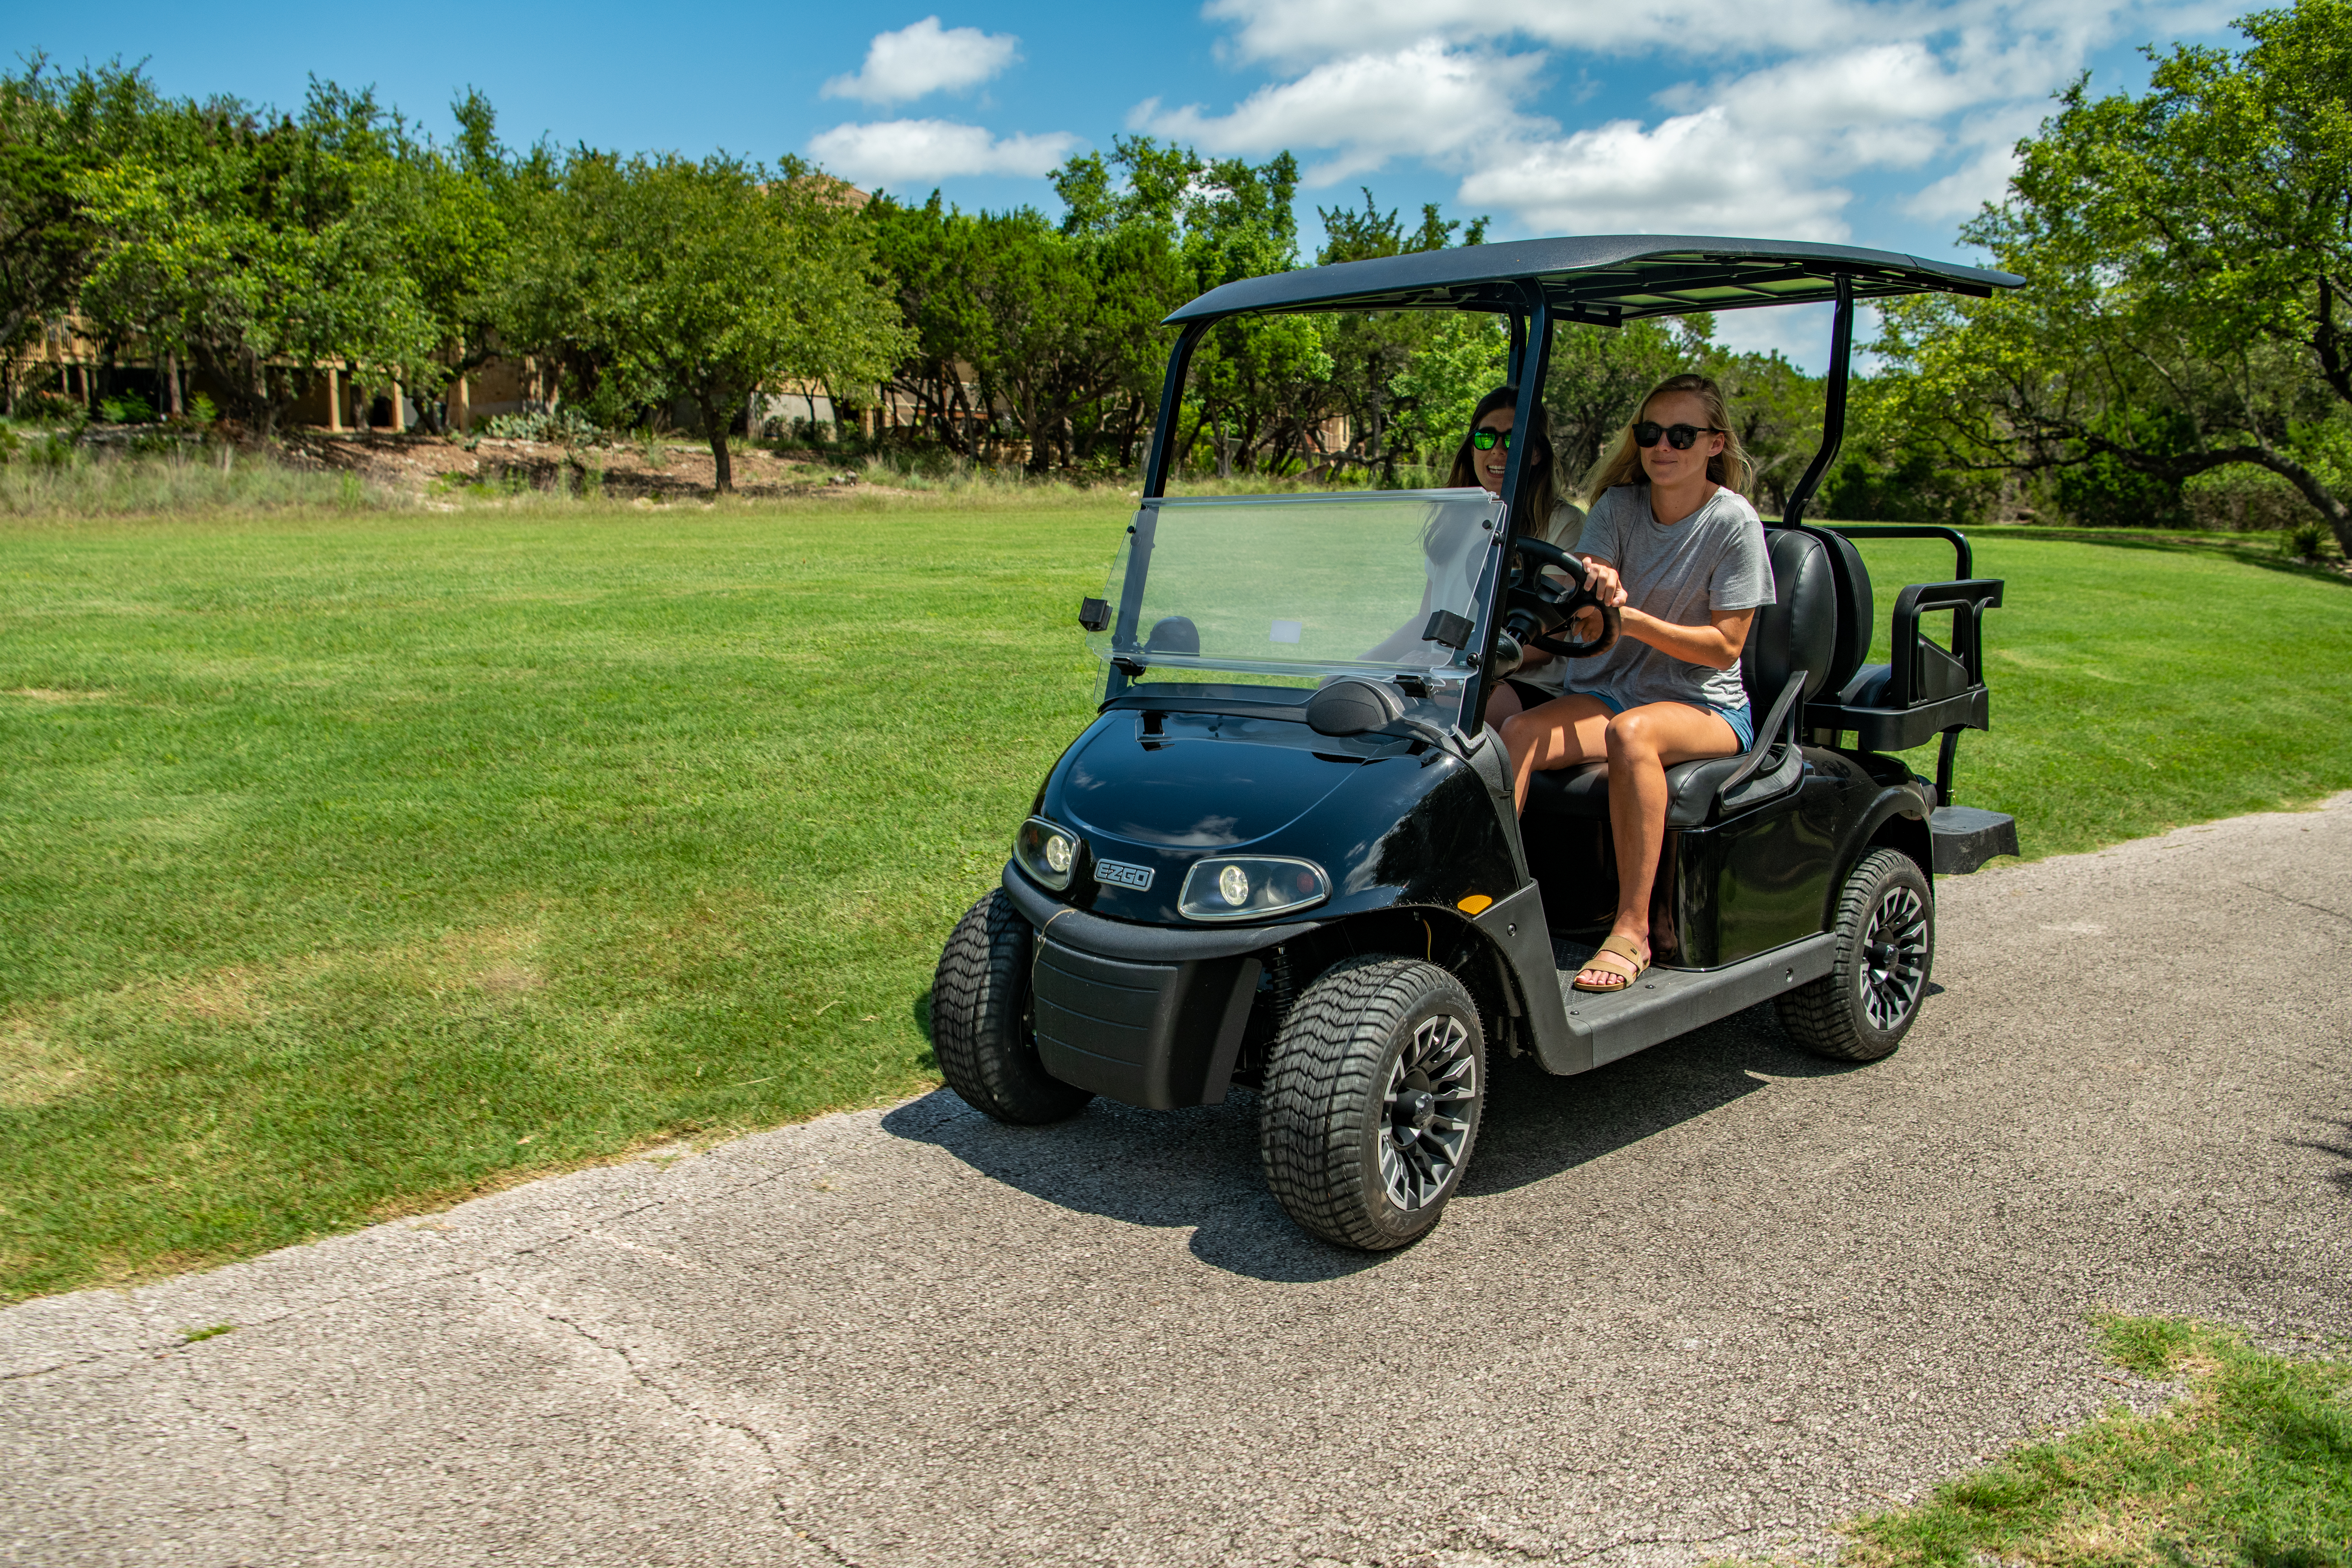 Golfers riding E-Z-GO golf cart